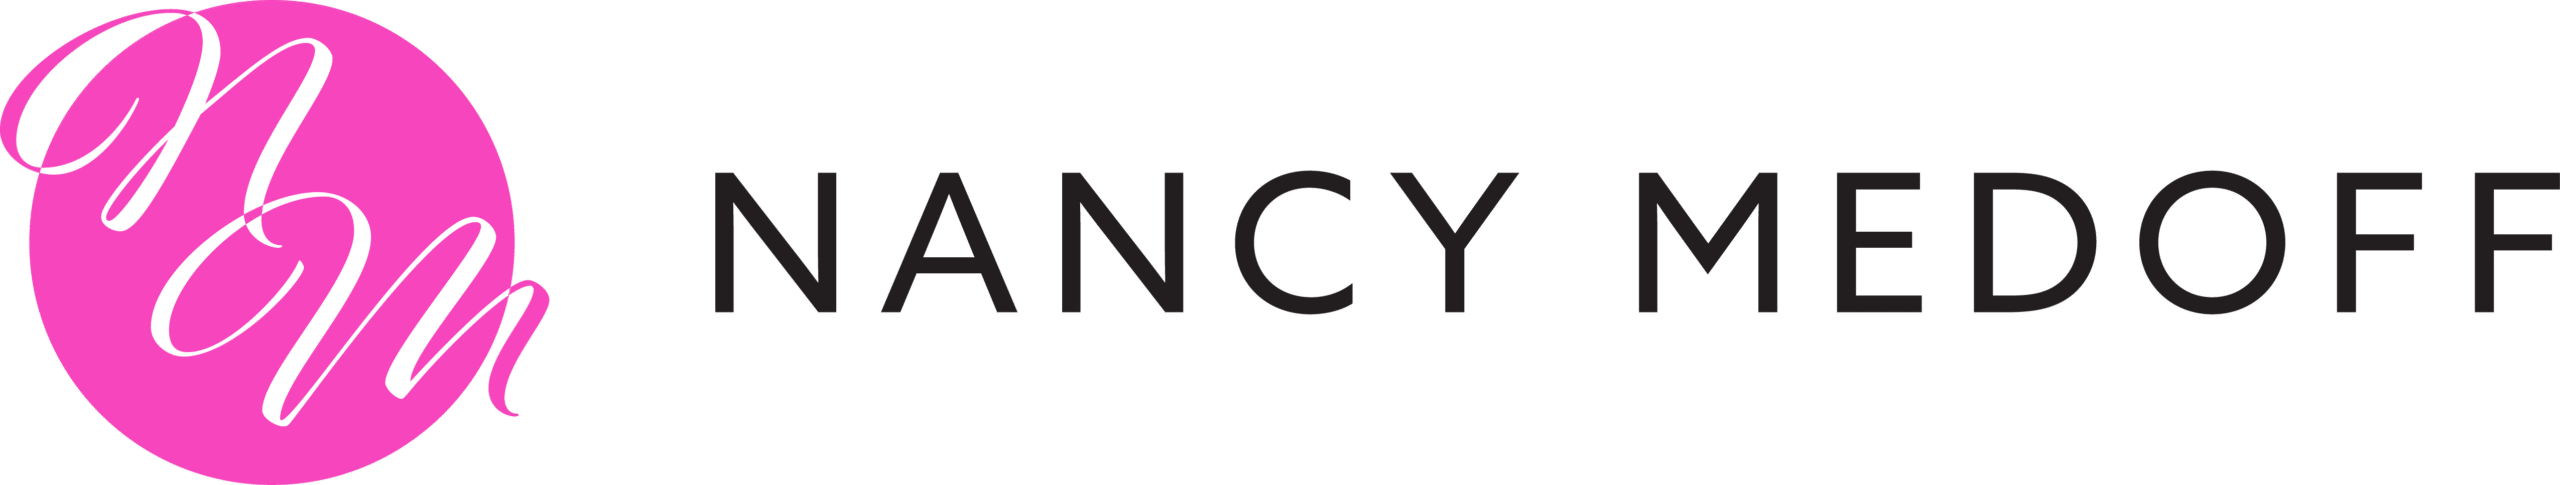 nancyMedoff-logo